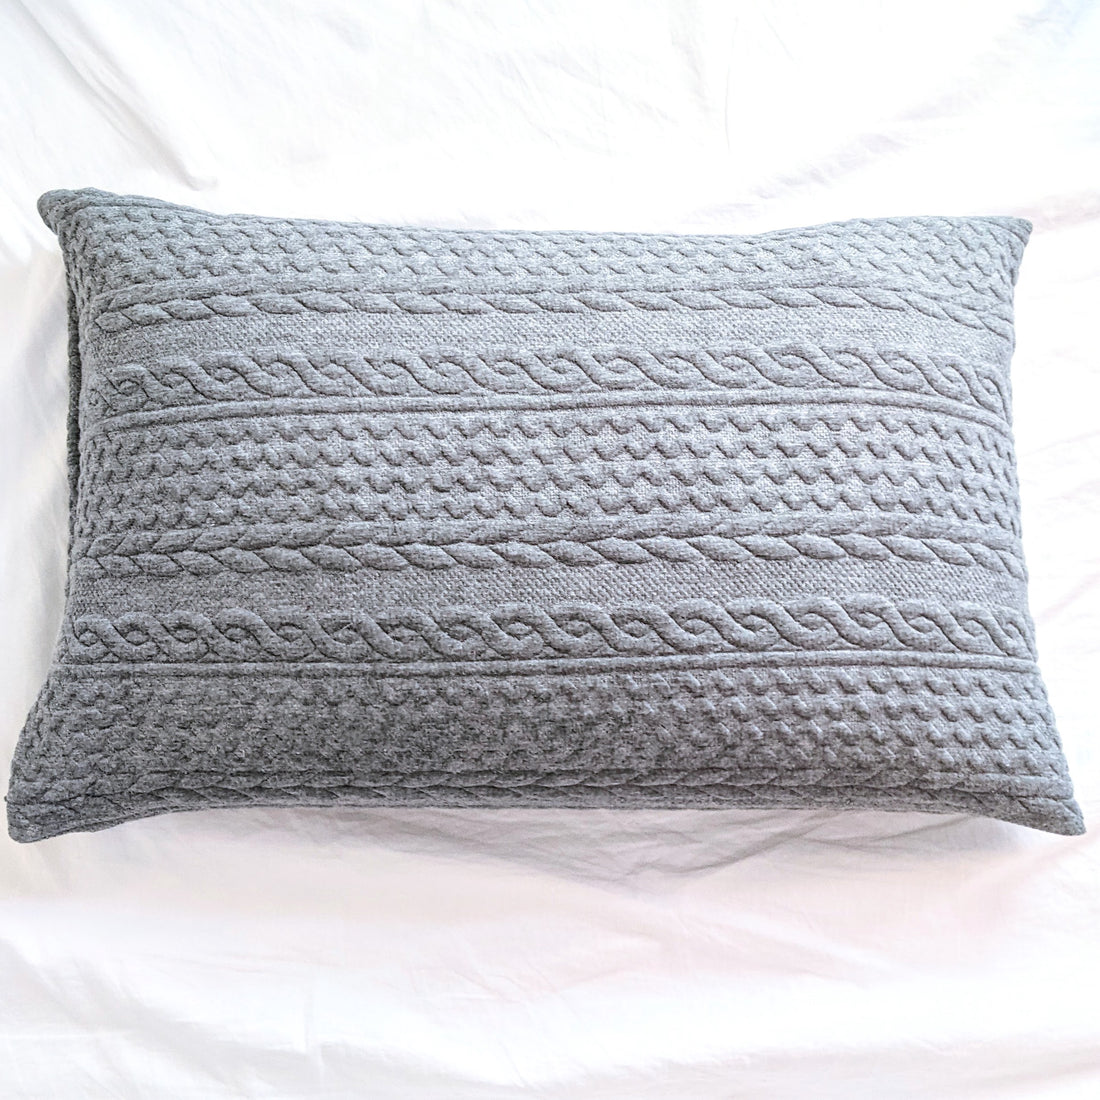 Buckwheat Lumbar Cushion - Grey Knit